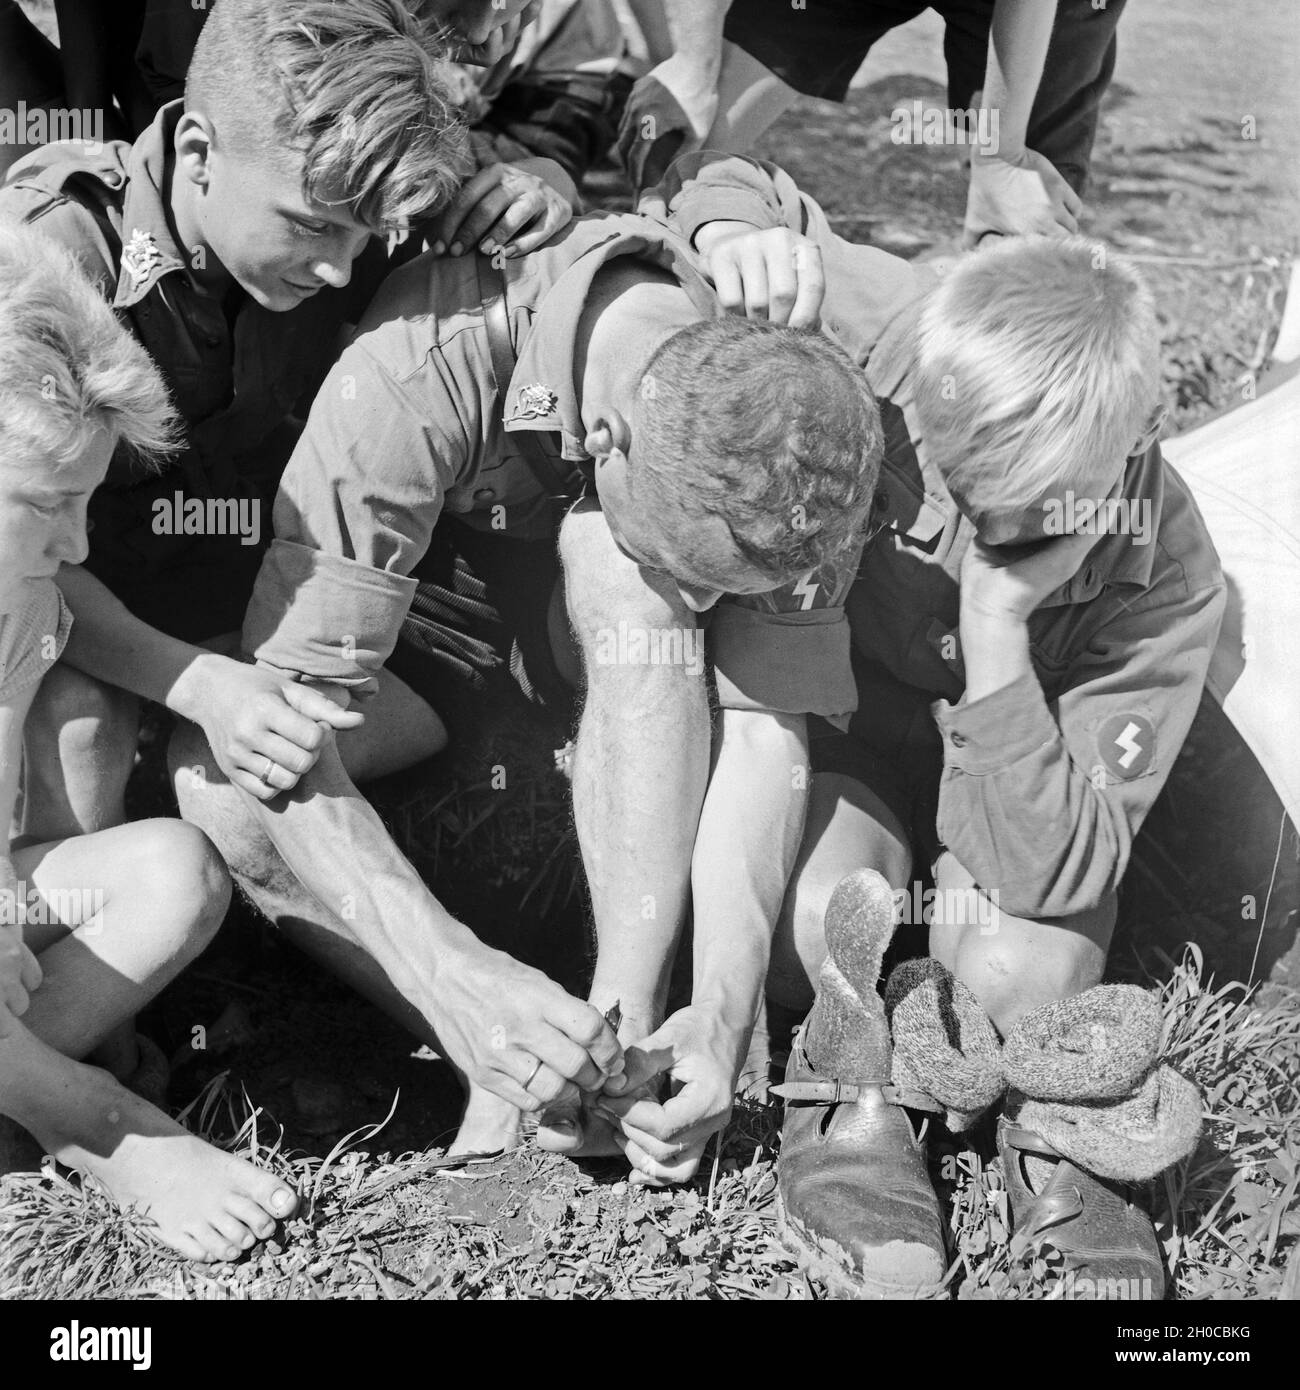 Auch harte Jungs müssen sich der Fußpflege unterziehen im Hitlerjugend Lager, Österreich 1930er Jahre. Even tough boys have to do foot care at the Hitler youth camp, Austria 1930s. Stock Photo